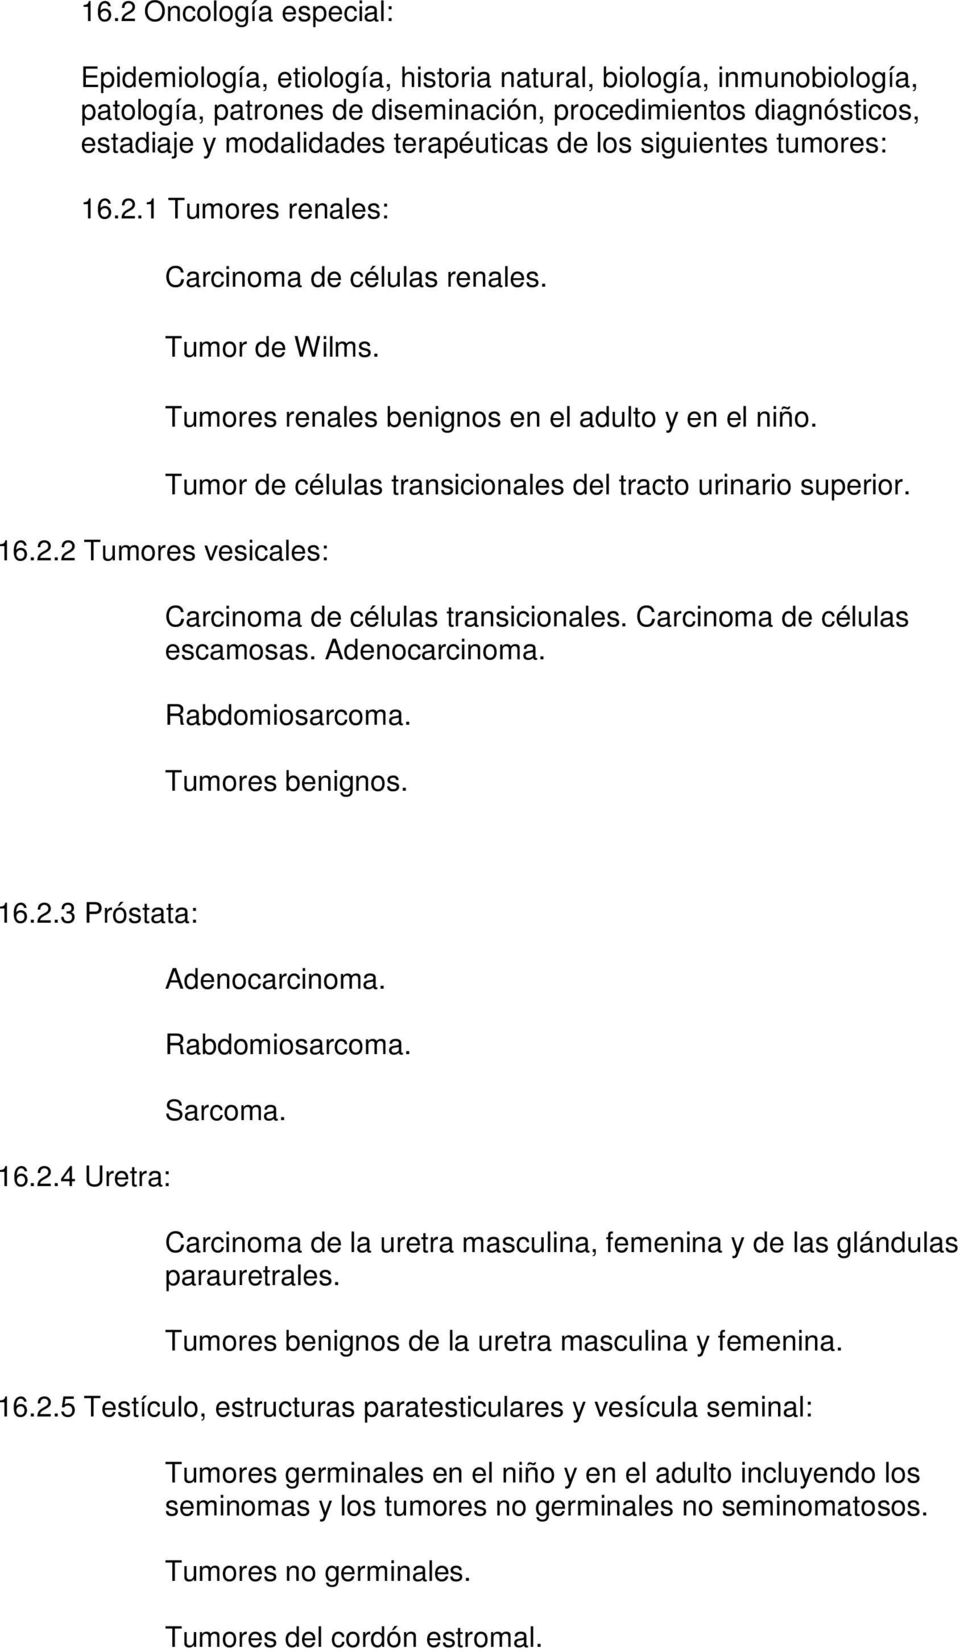 Tumor de células transicionales del tracto urinario superior. Carcinoma de células transicionales. Carcinoma de células escamosas. Adenocarcinoma. Rabdomiosarcoma. Tumores benignos. 16.2.